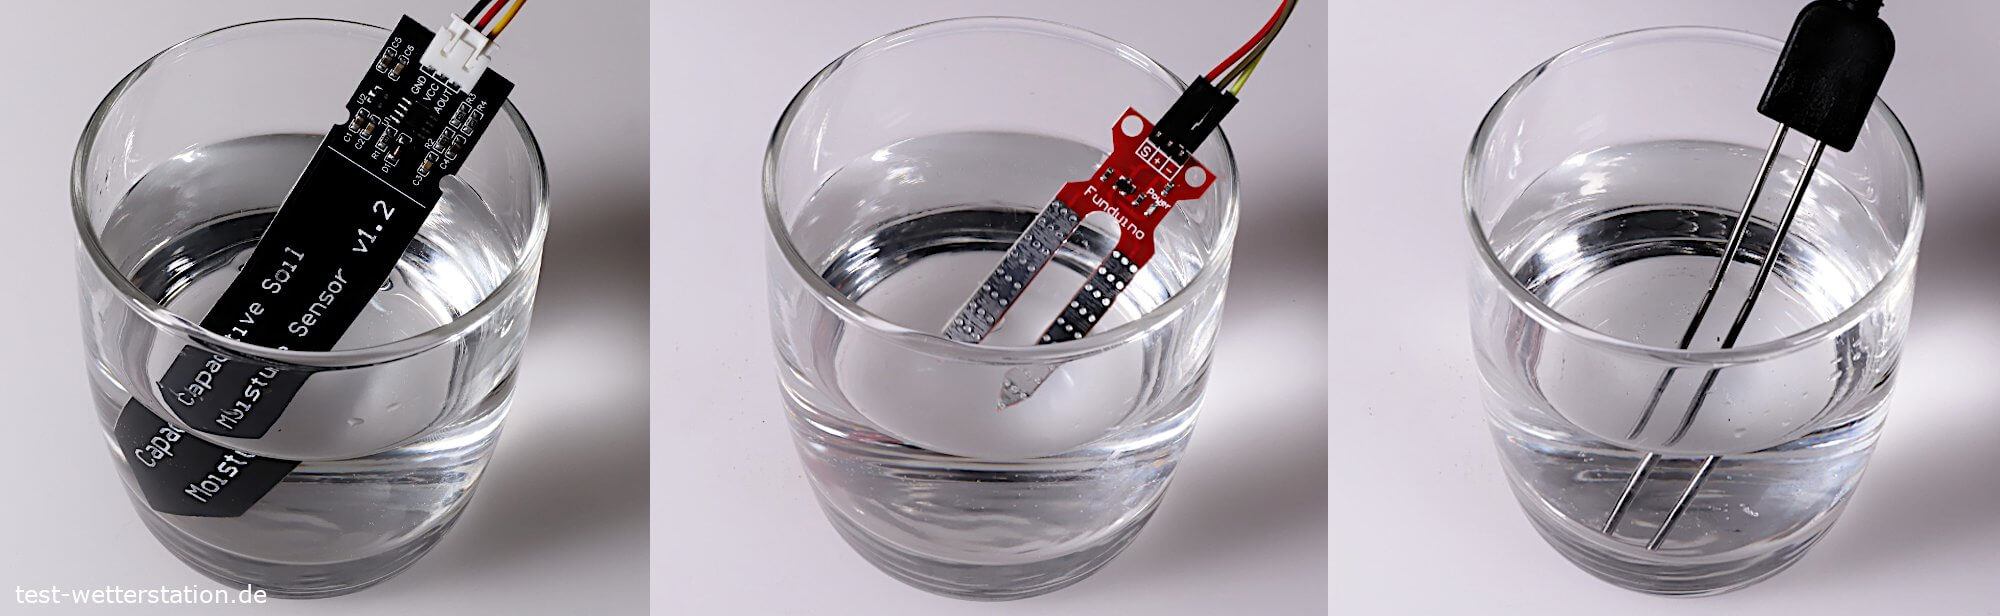 Füllstandsensor Modul zum Messen von Wasserstand von Flüssigkeiten